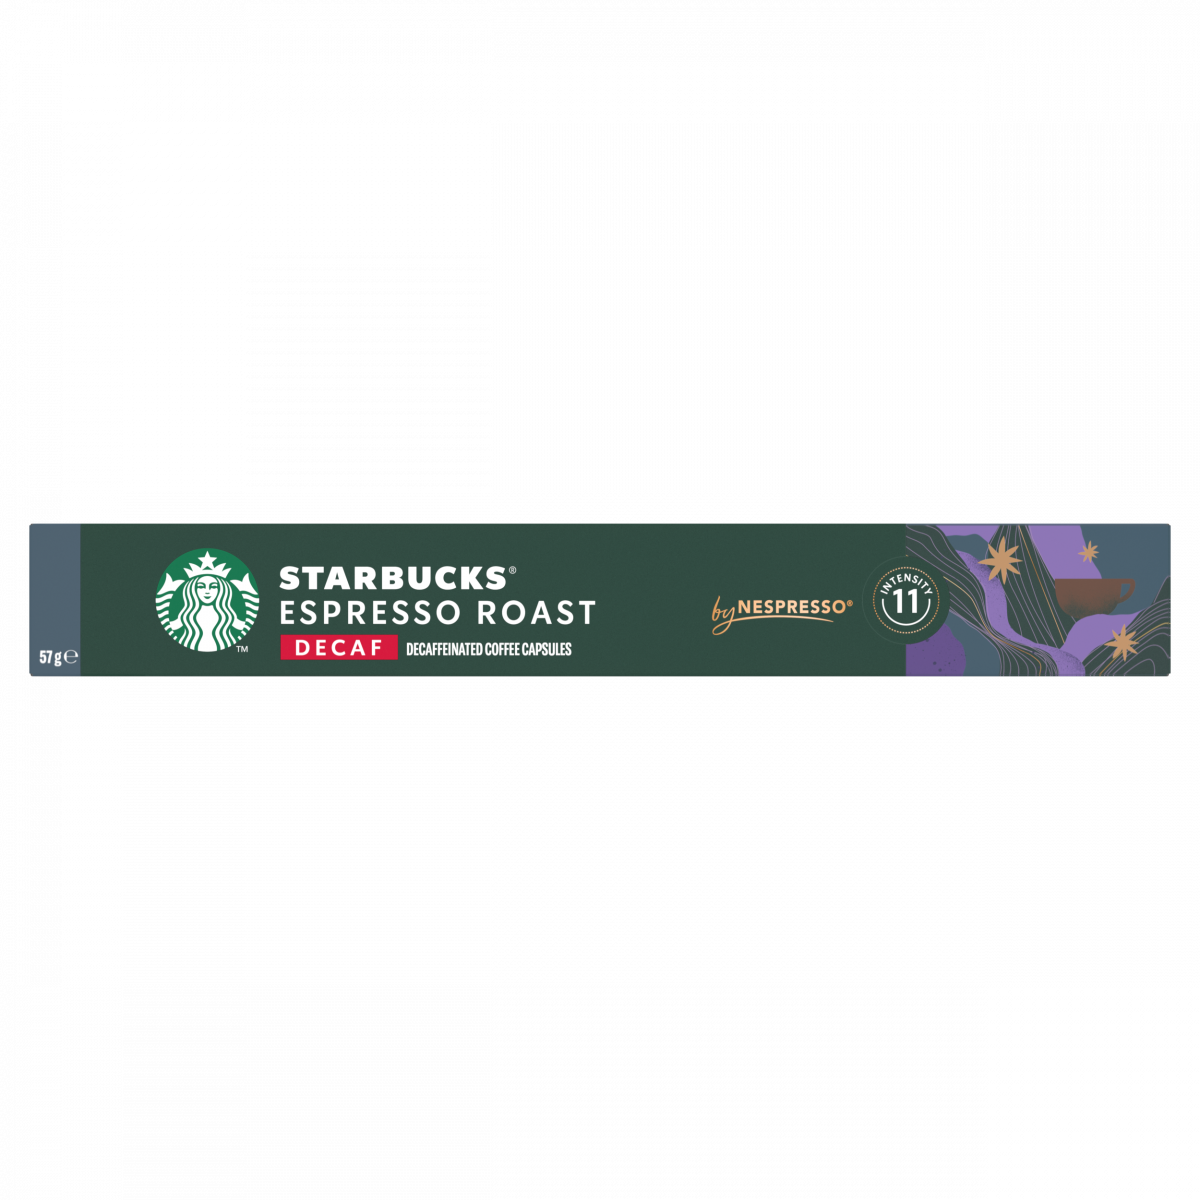 低咖啡因特濃烘焙咖啡 Nespresso 咖啡粉囊 #Starbucks #咖啡粉 #咖啡機 #星巴克